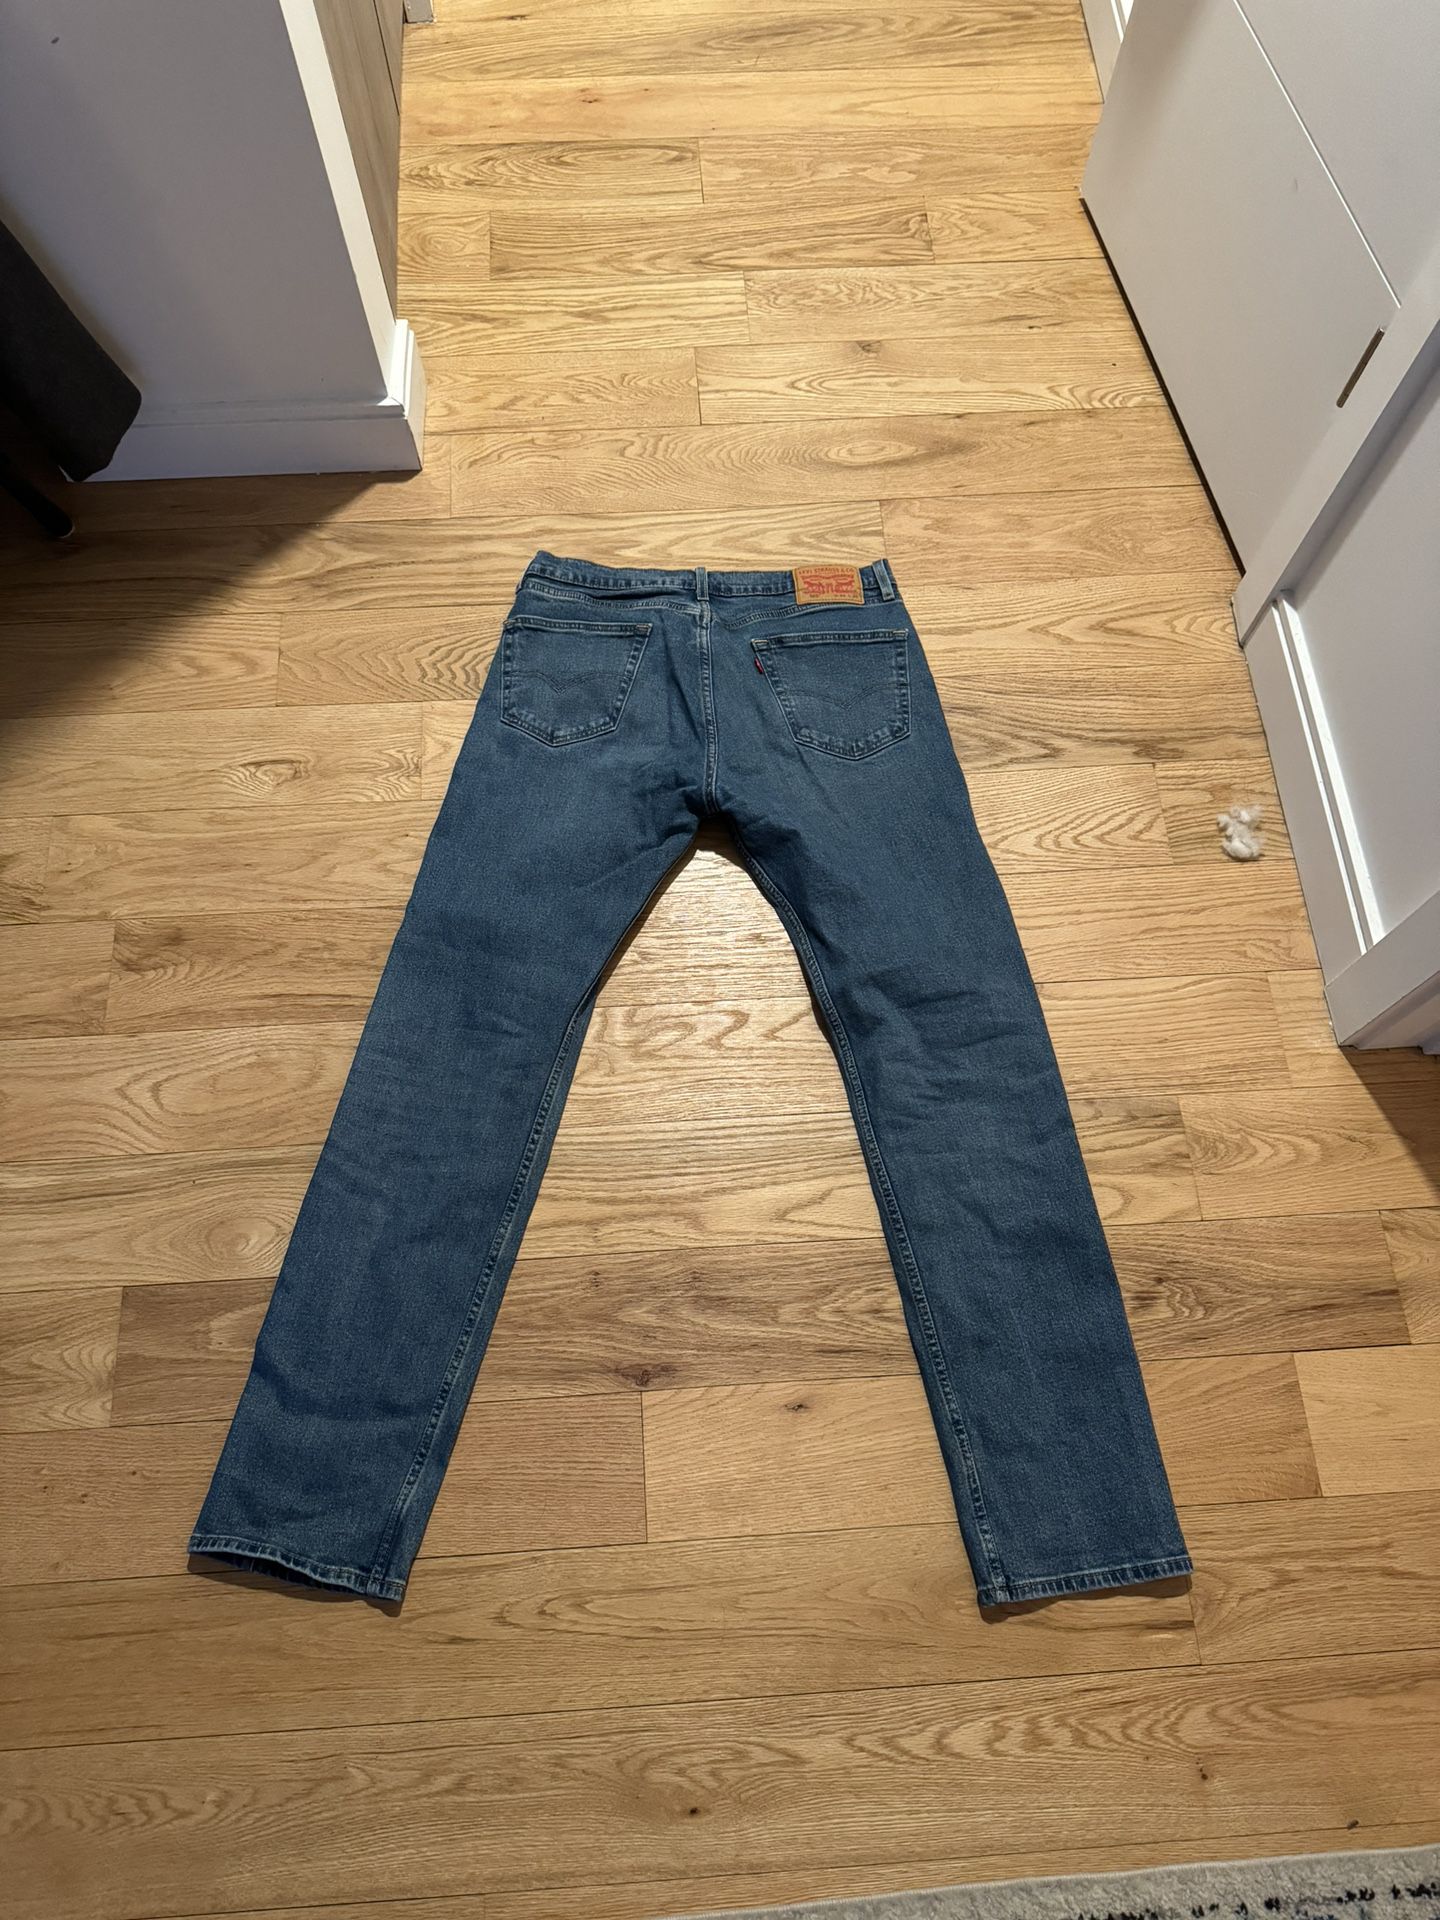 Men’s Levi Jeans Size 33 Waist X 34 Length